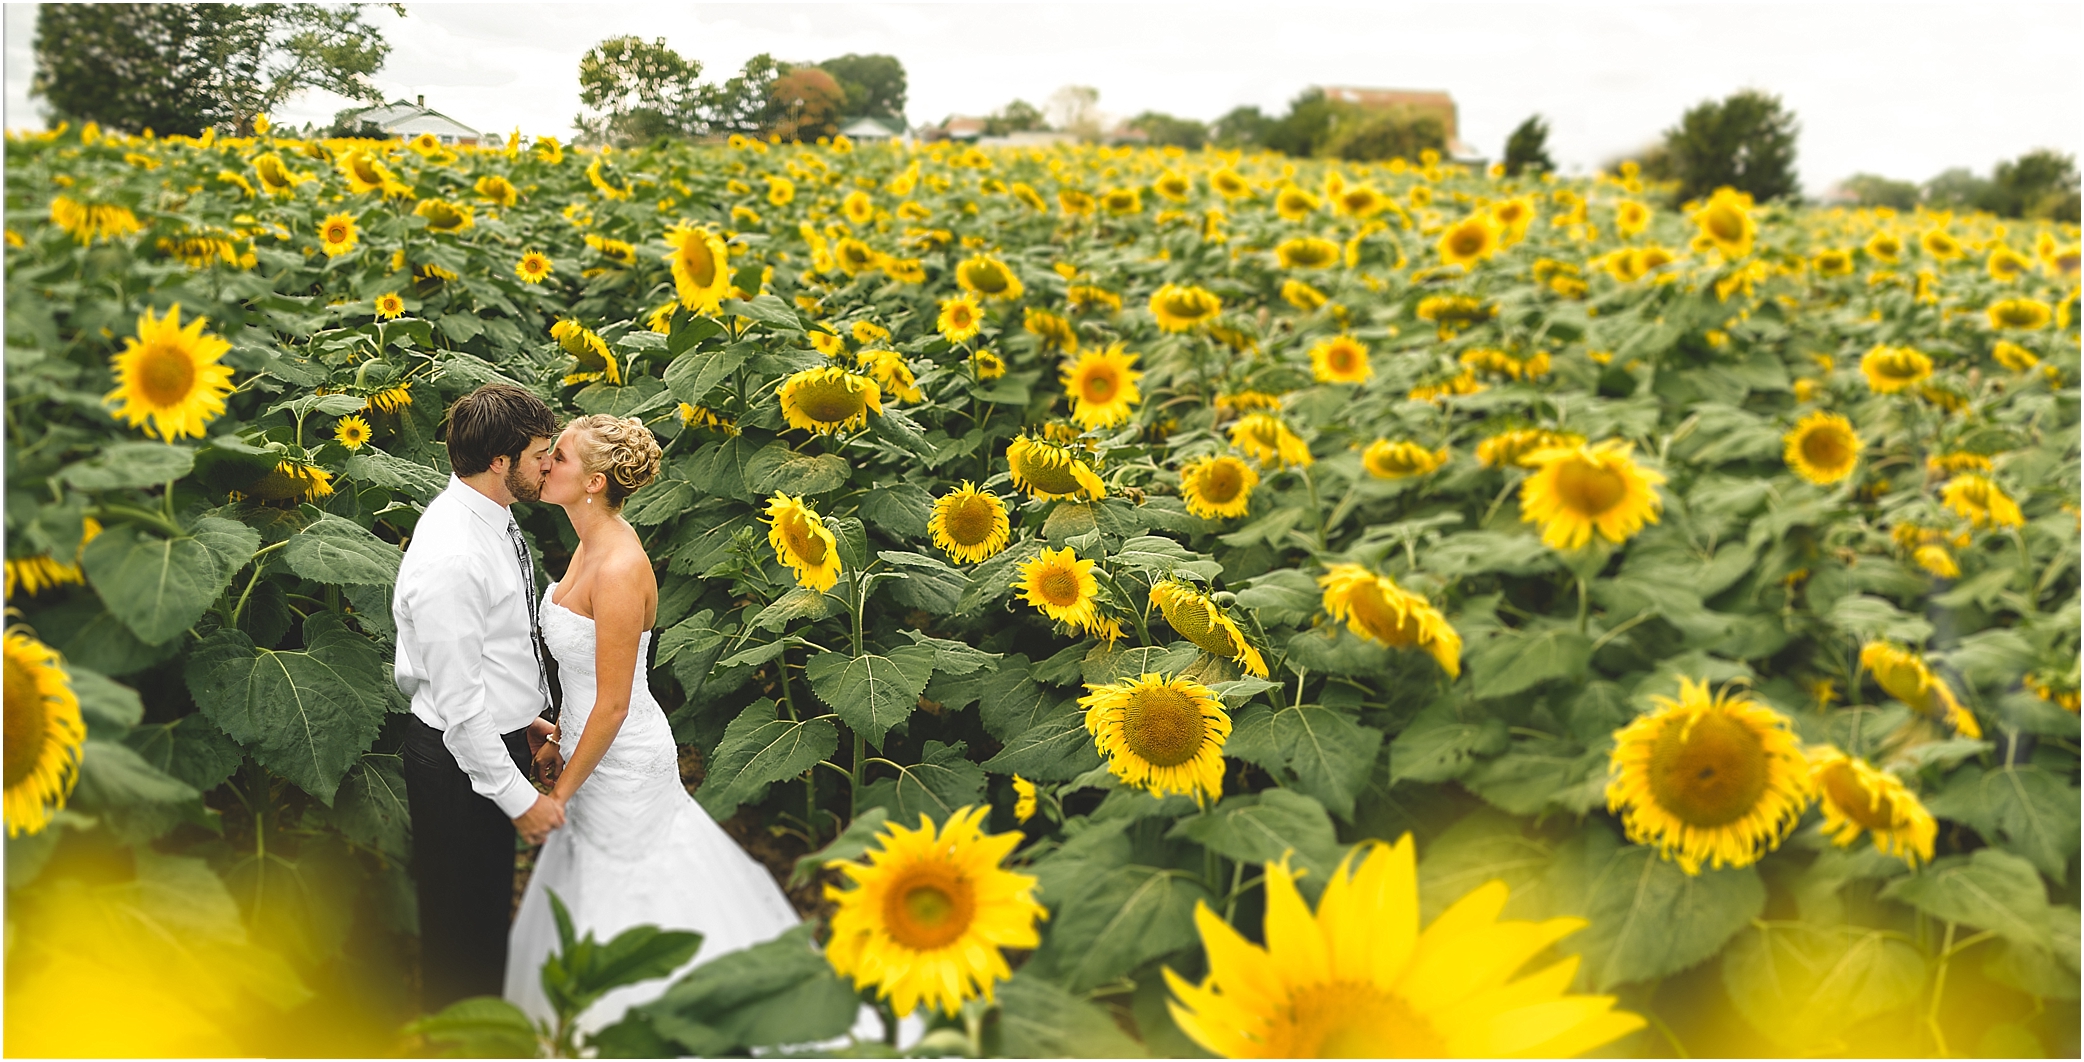 Sunflower Field Wedding Photos in Dandridge TN by JoPhoto